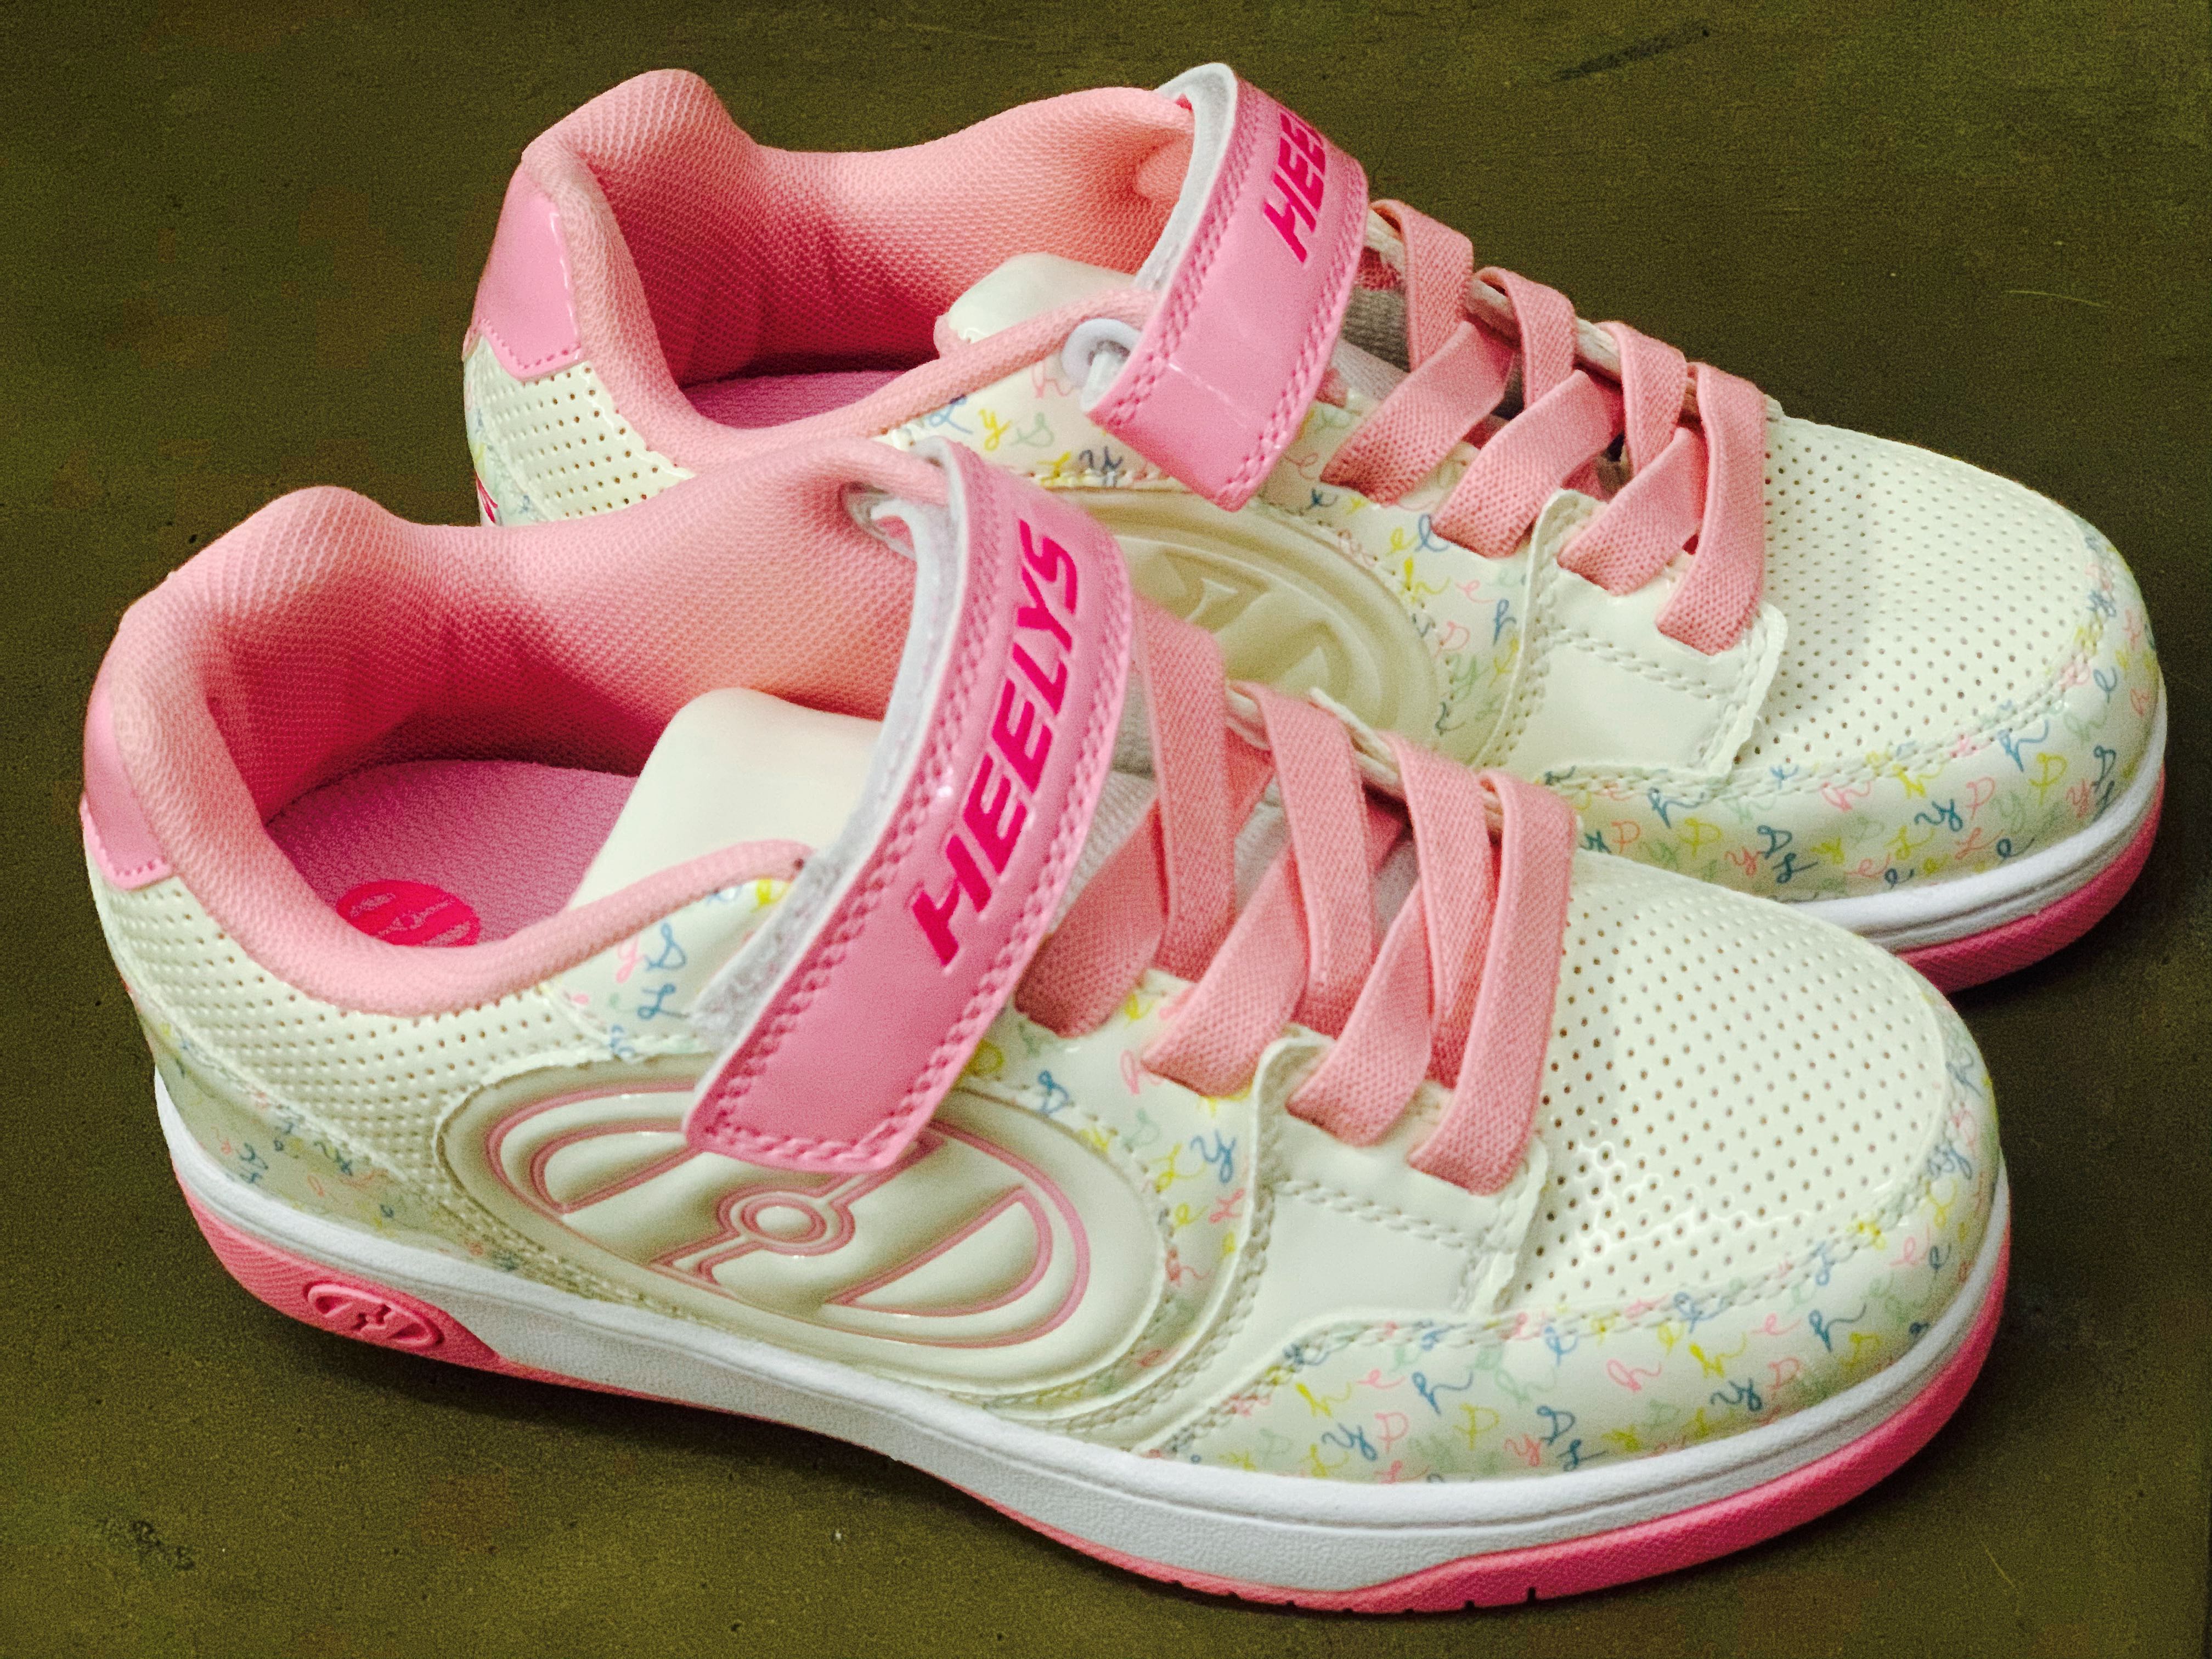 Heelys roller shoes for girls (like new 